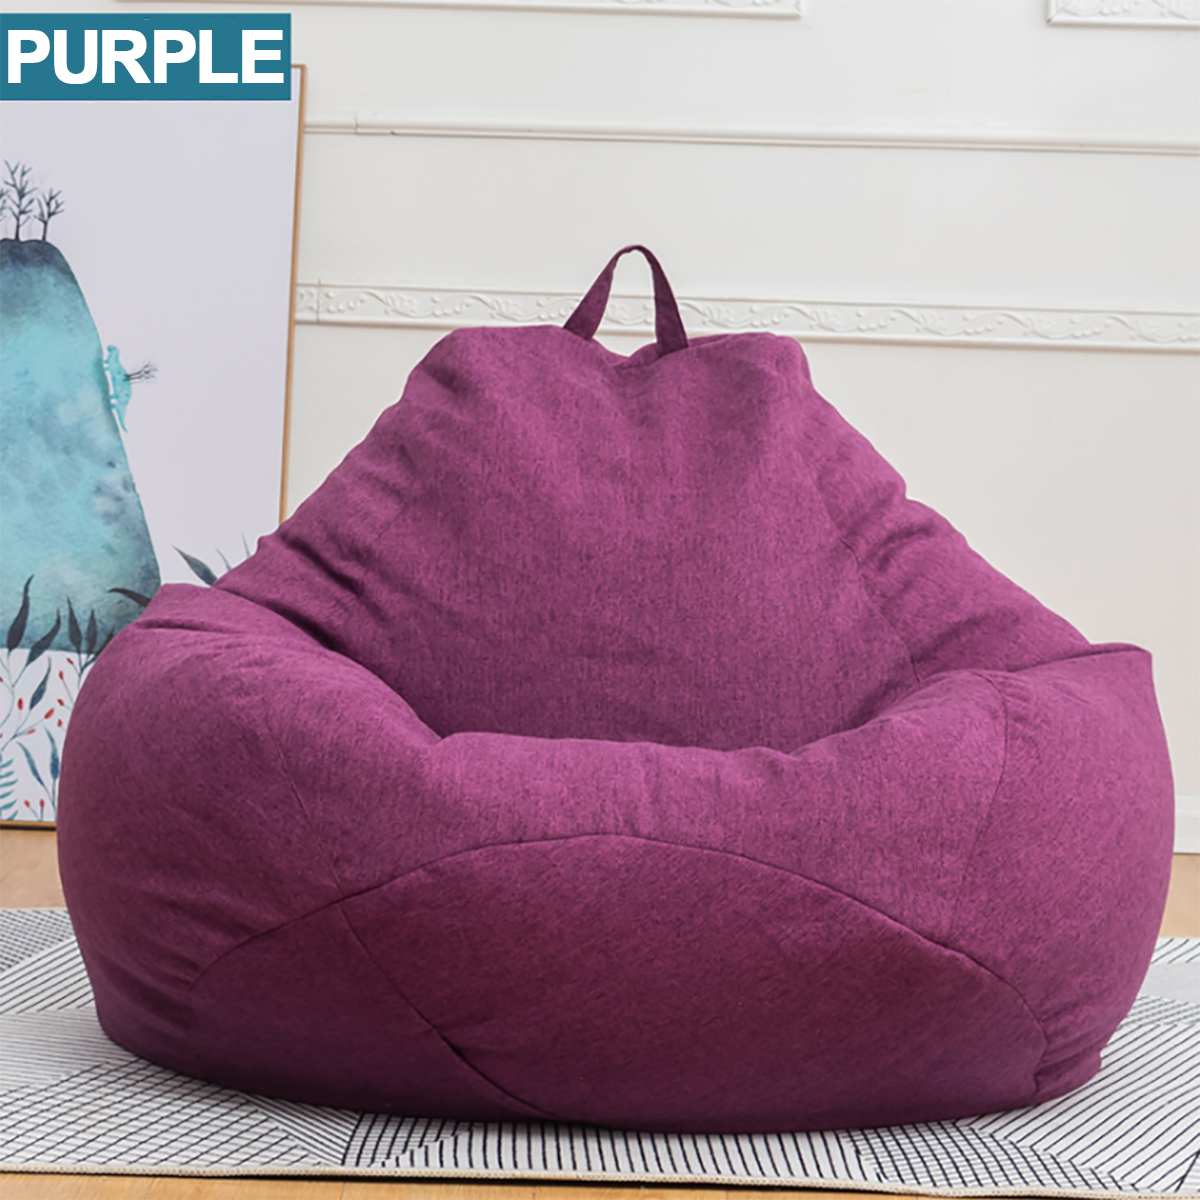 Comfortable Soft Giant Bean Bag Chair